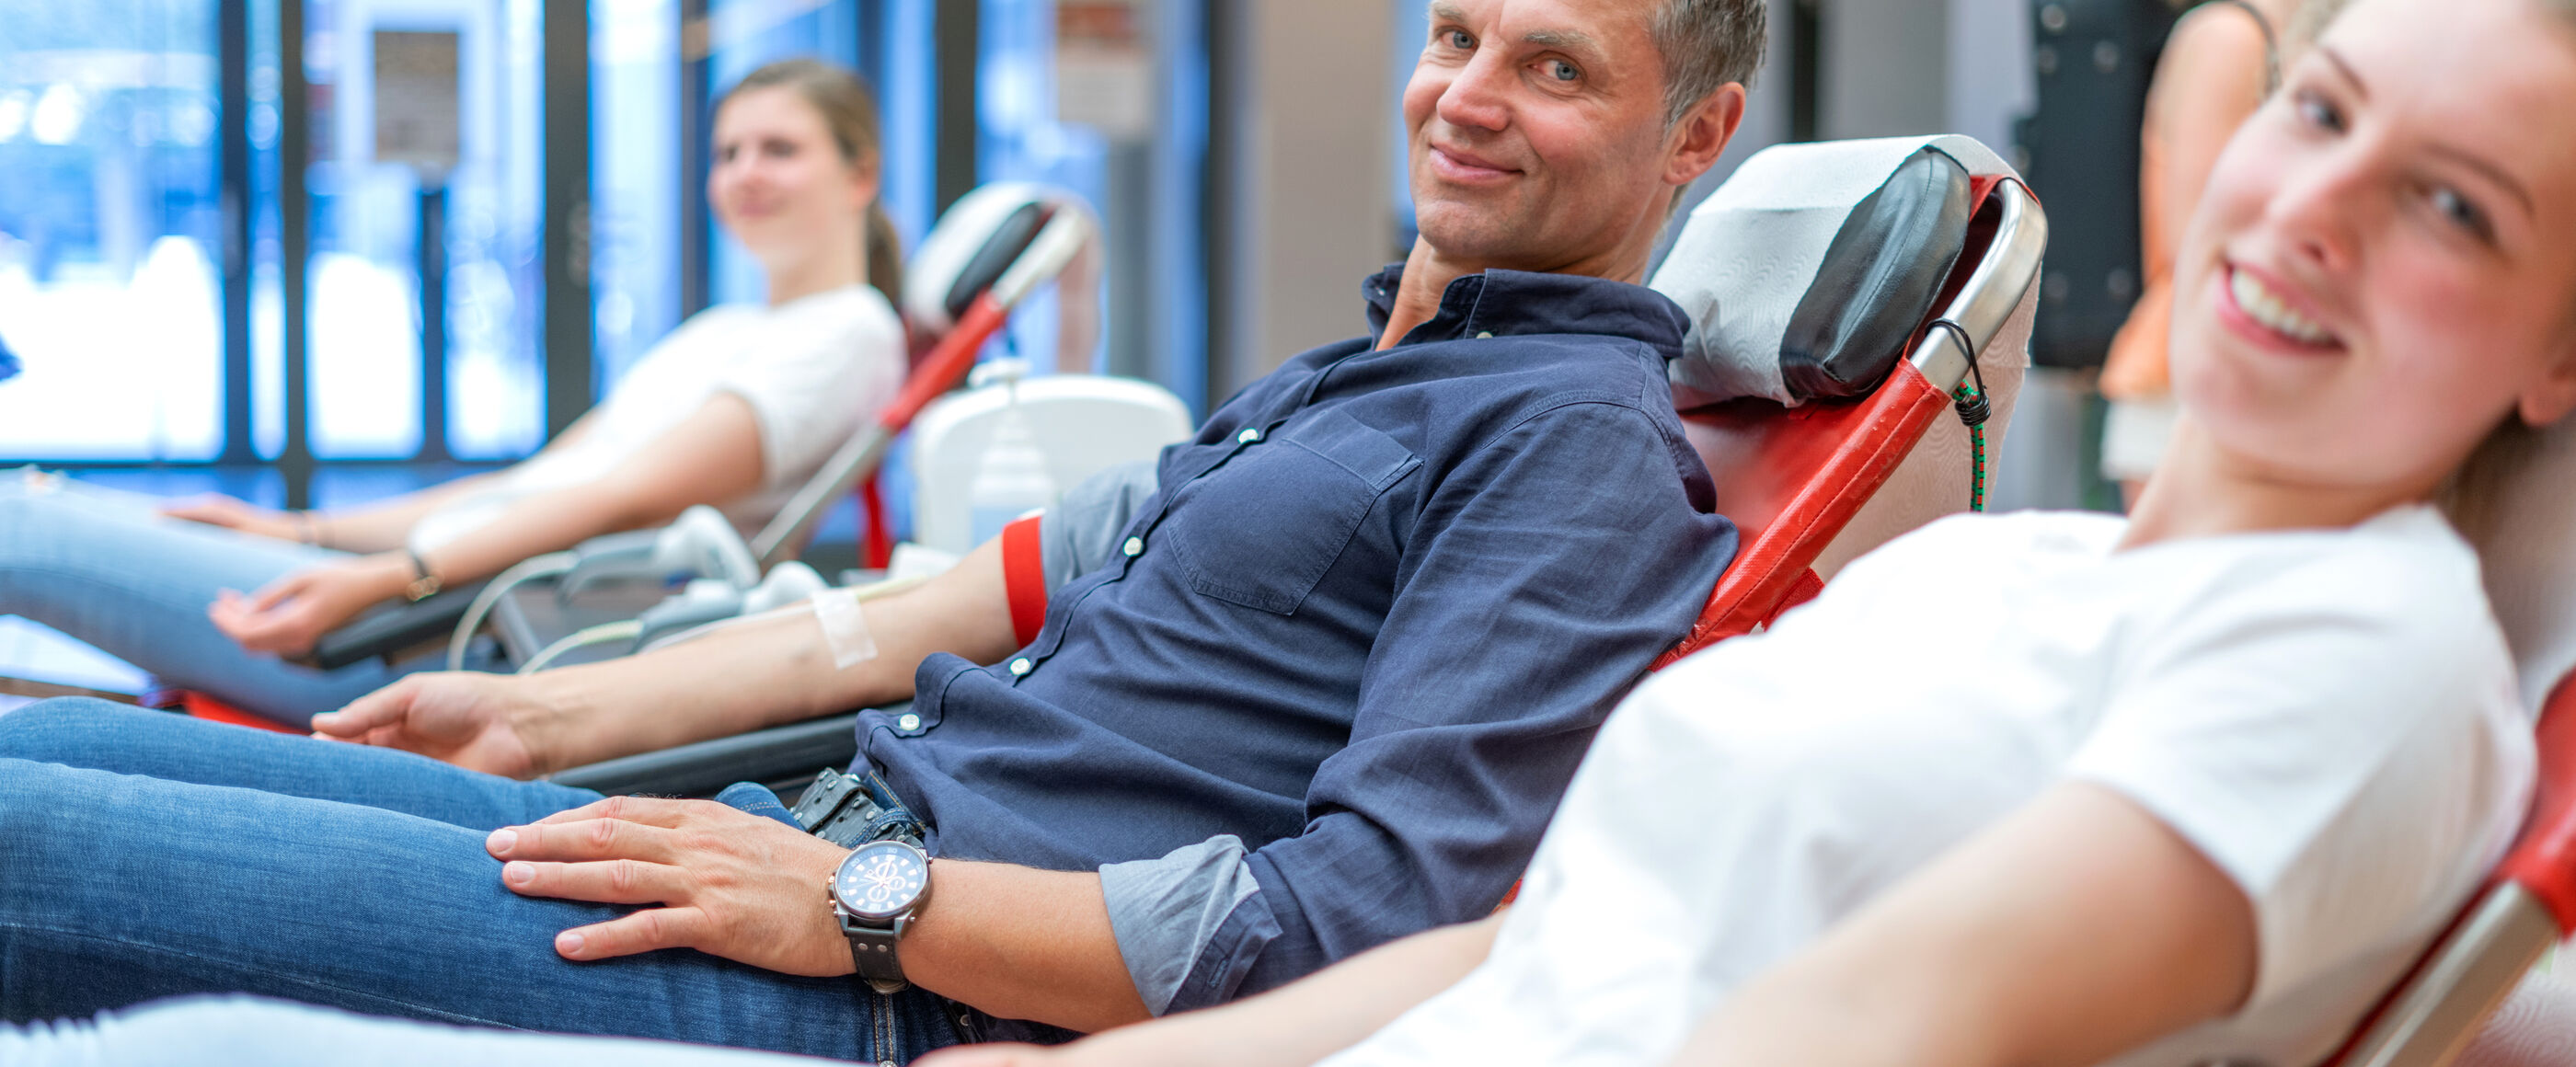 Drei Personen liegen nebeneinander und haben Schläuche in den Ellenbogen, zum Blutspenden. Sie lächeln. 